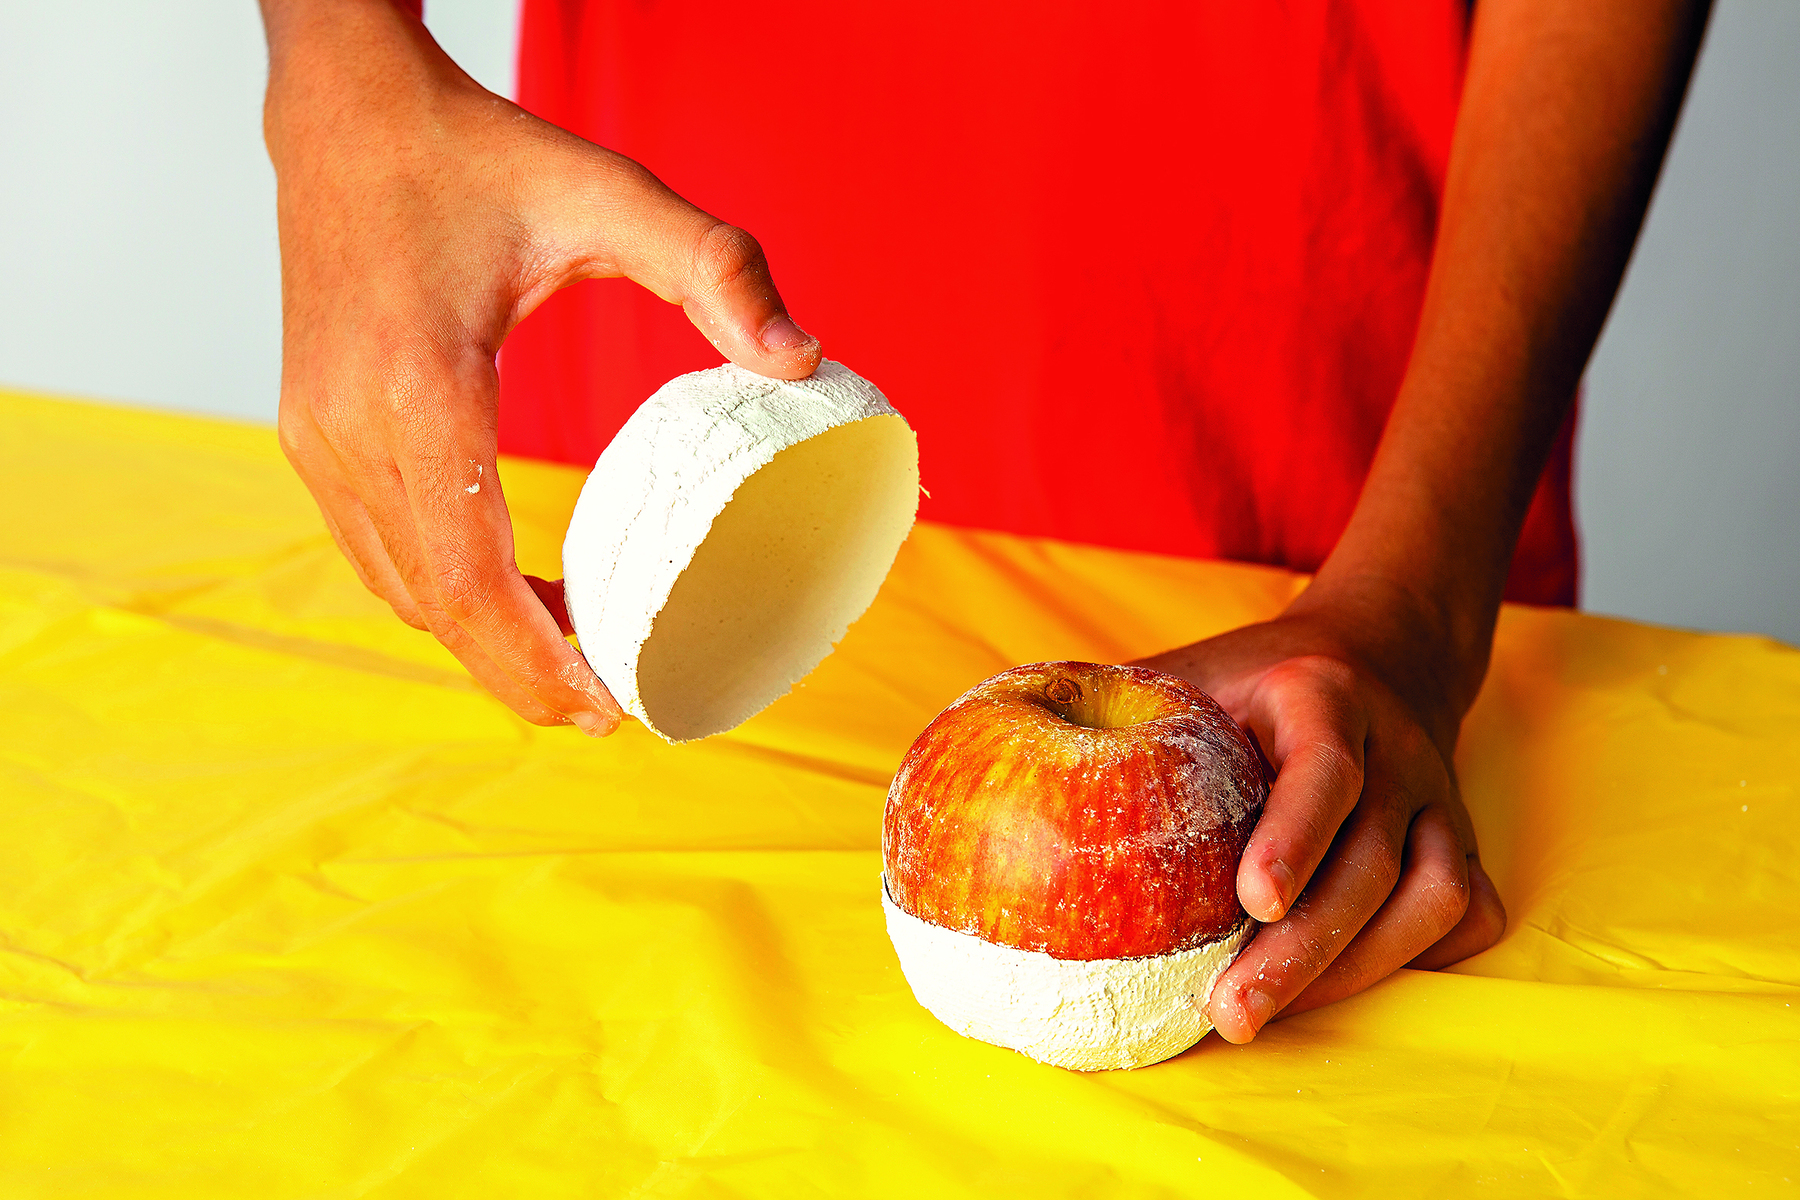 Fotografia. Detalhe das mãos de uma pessoa  removendo a metade superior de um molde de gesso, com a forma de uma maçã, sobre uma mesa coberta por uma toalha amarela.